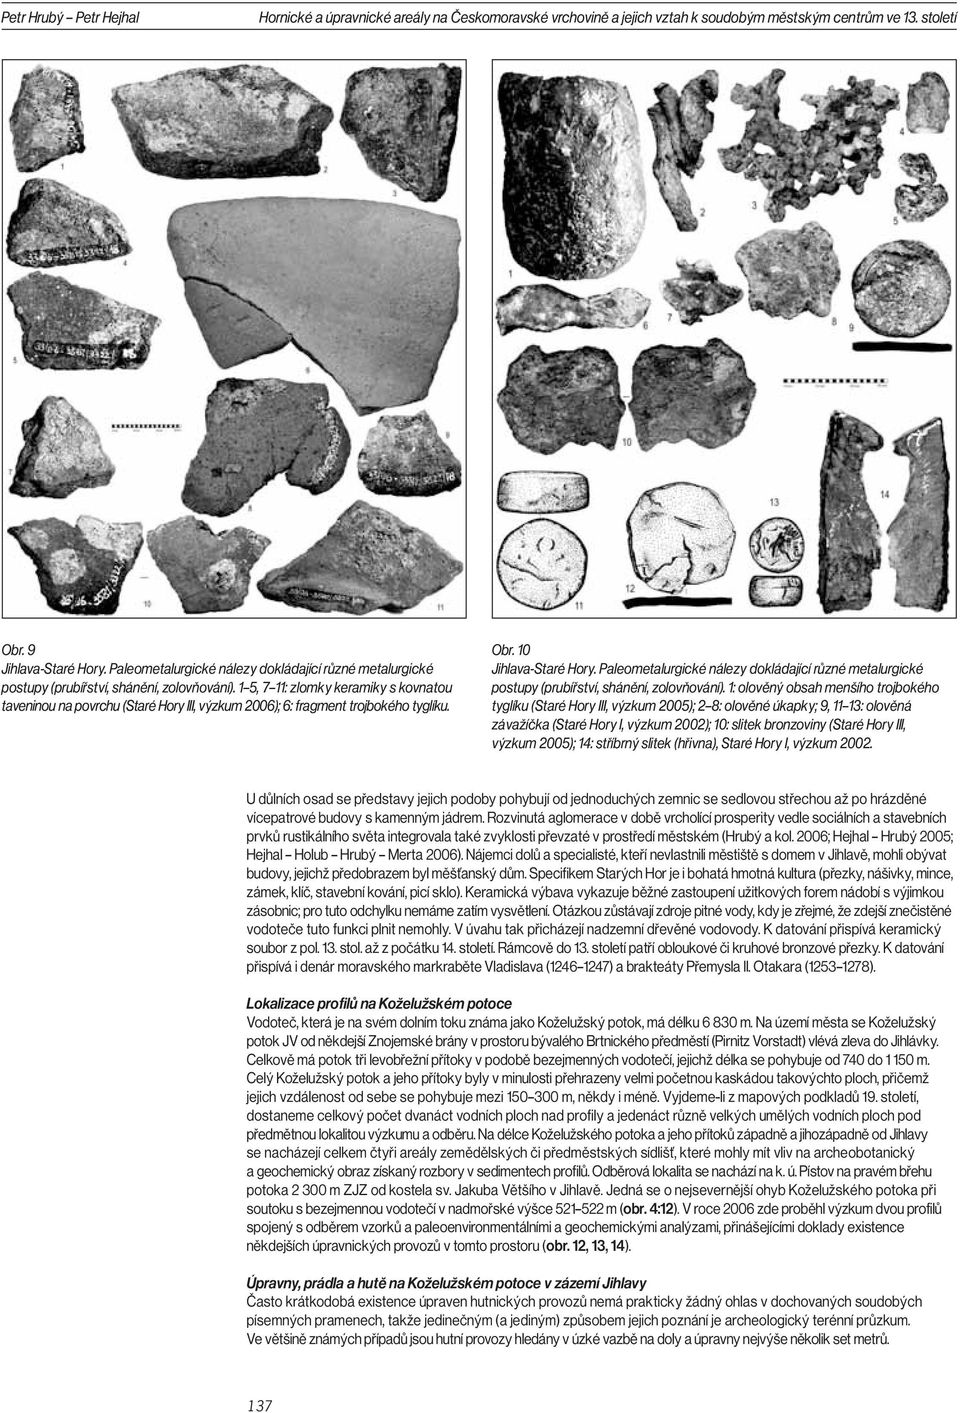 1 5, 7 11: zlomky keramiky s kovnatou taveninou na povrchu (Staré Hory III, výzkum 2006); 6: fragment trojbokého tyglíku. Obr. 10 Jihlava-Staré Hory.